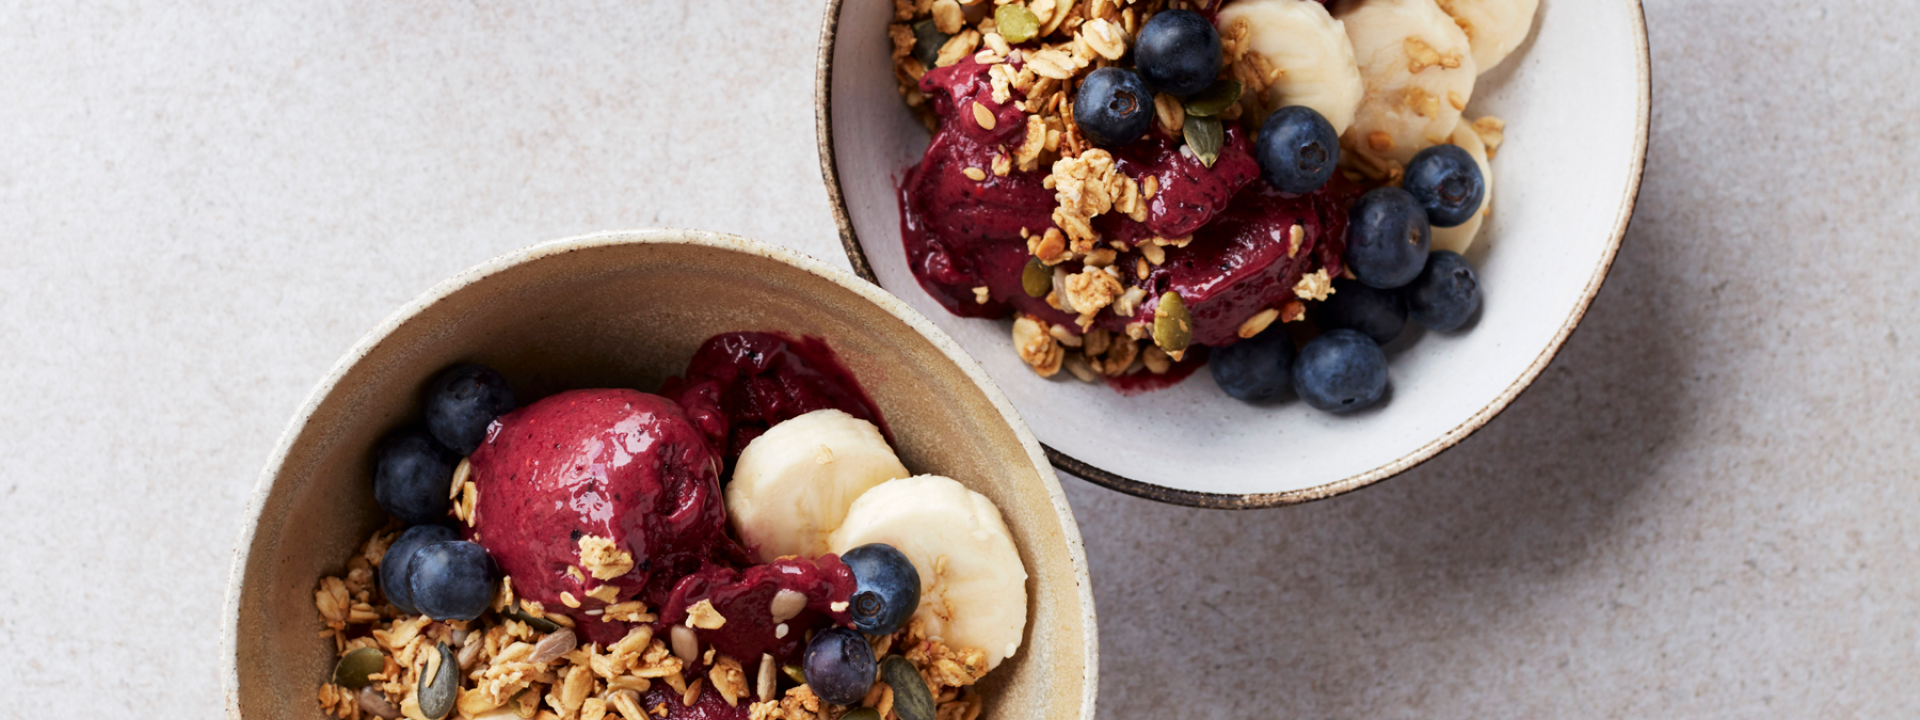 Frozen Berry Bowl | Healthy Breakfast Recipes | Gordon Ramsay Recipes